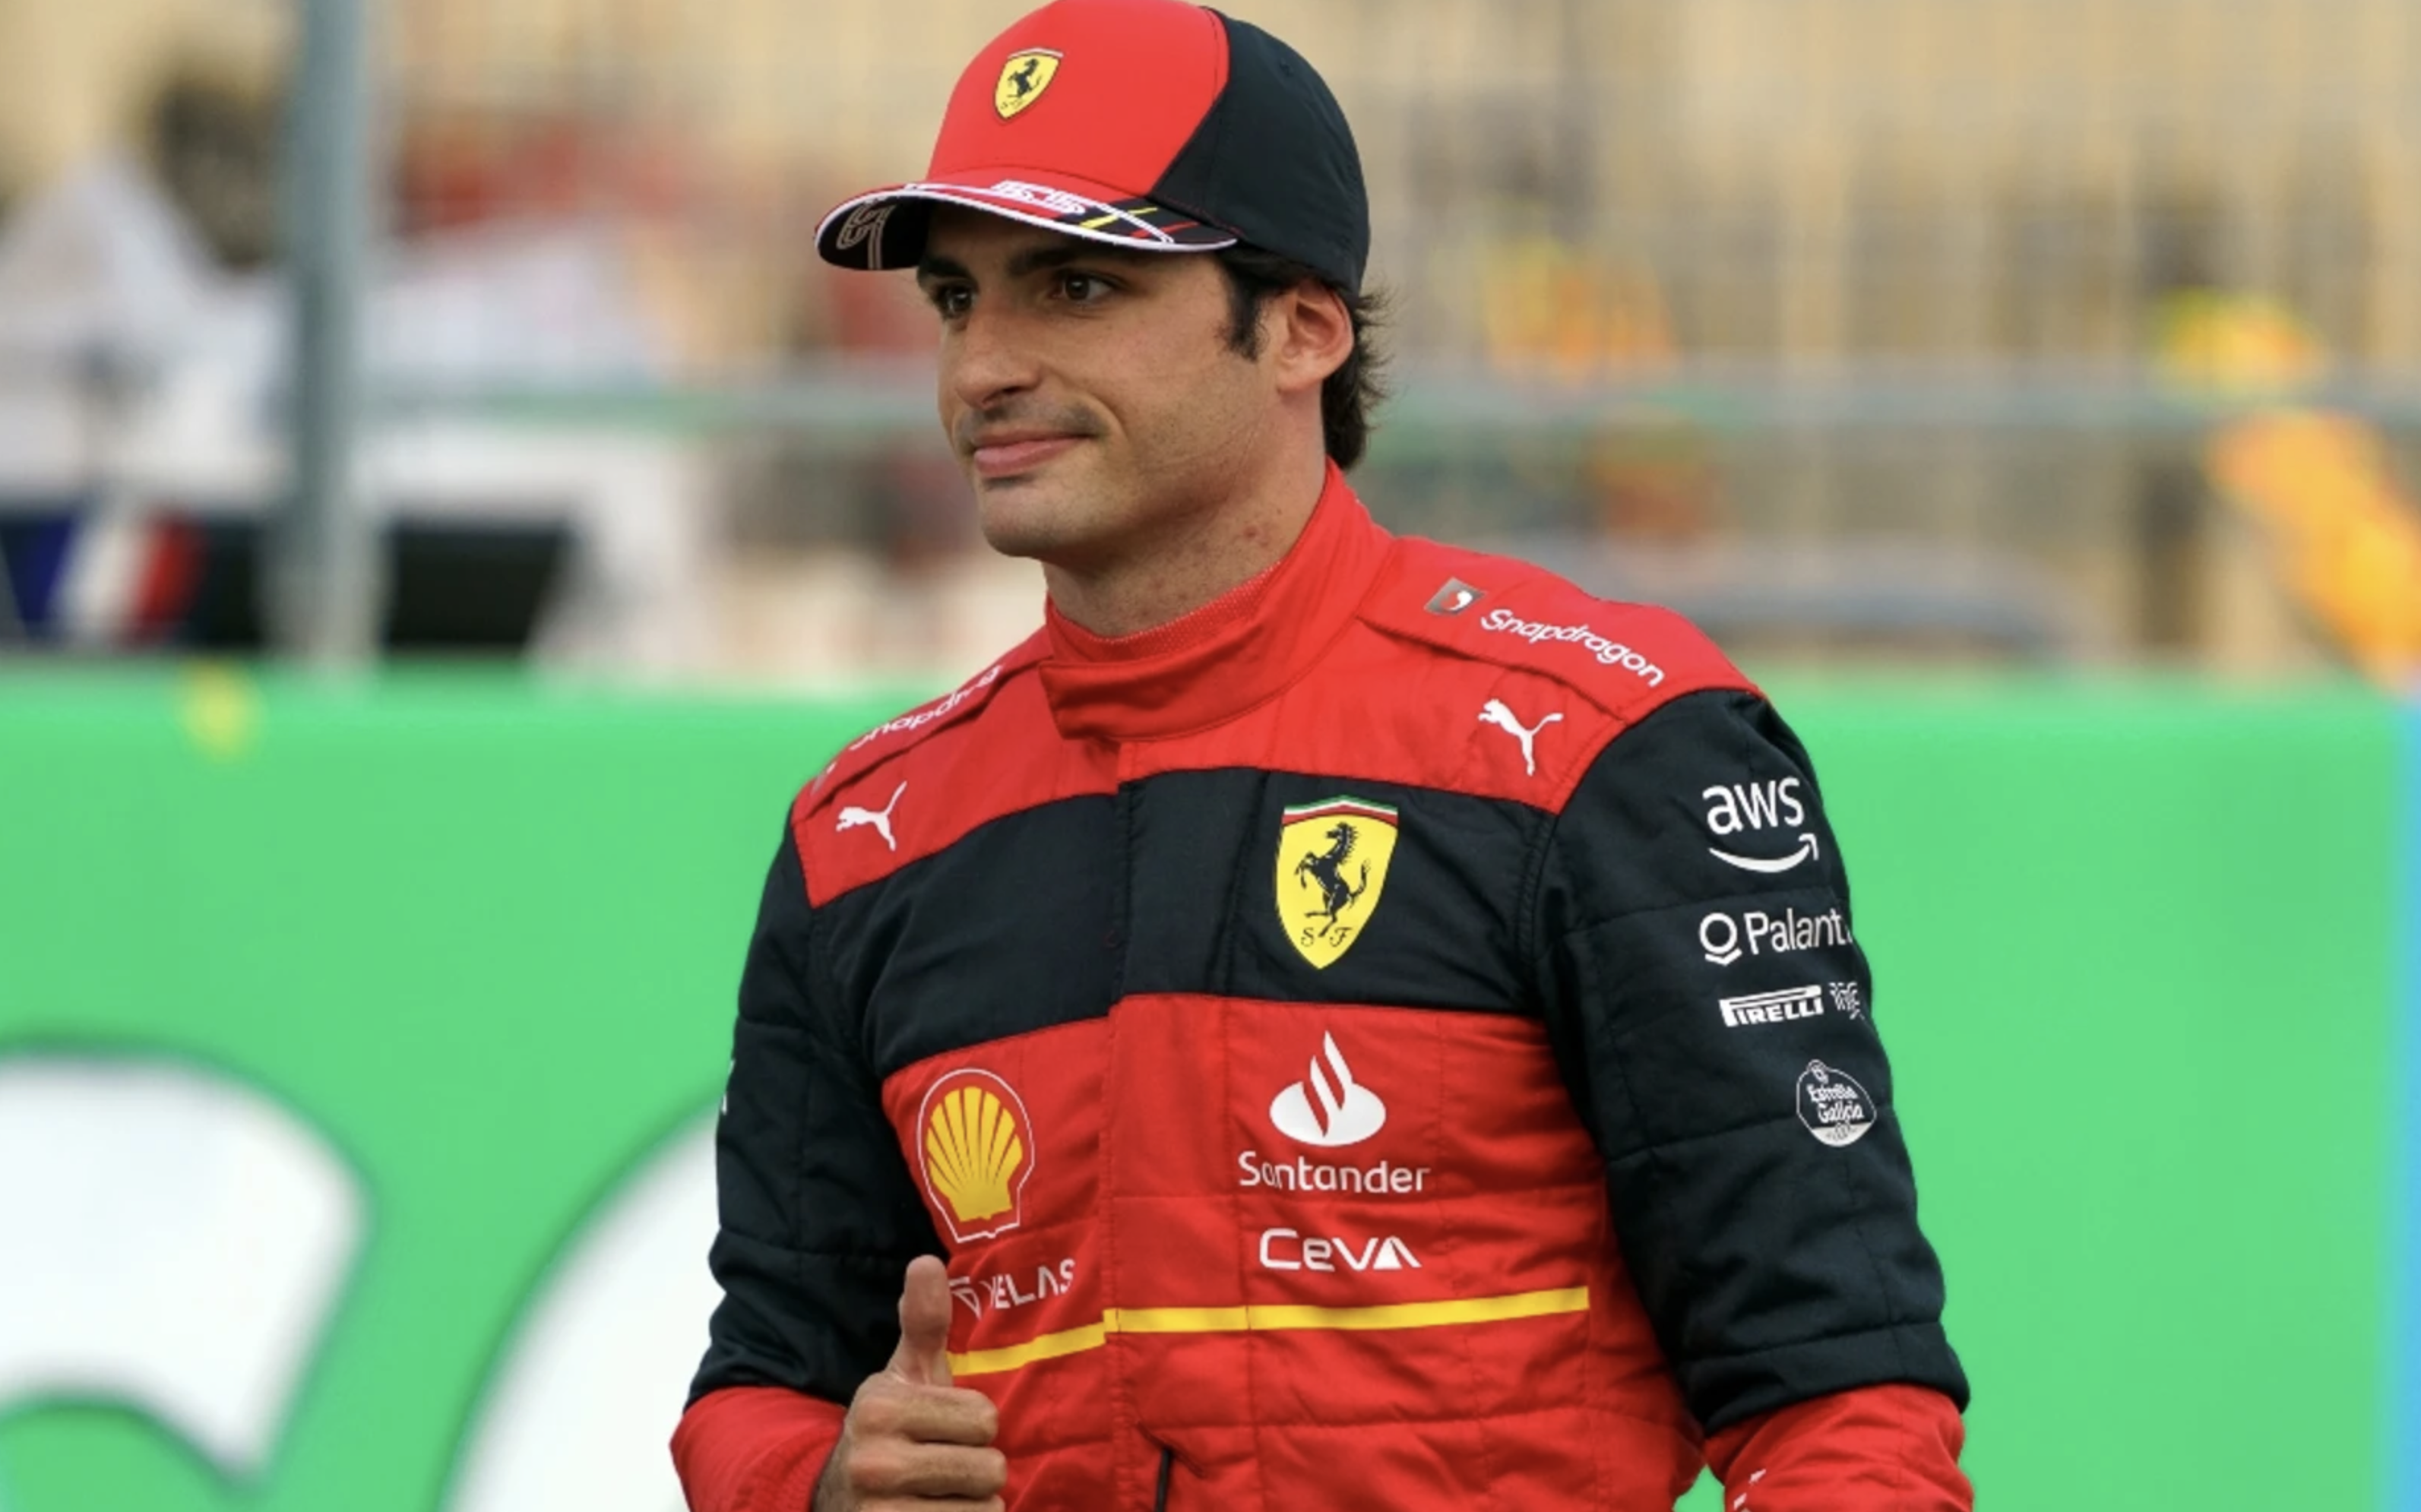 Carlos Sainz: “Hay conversaciones para renovar, mi objetivo es seguir en Ferrari”